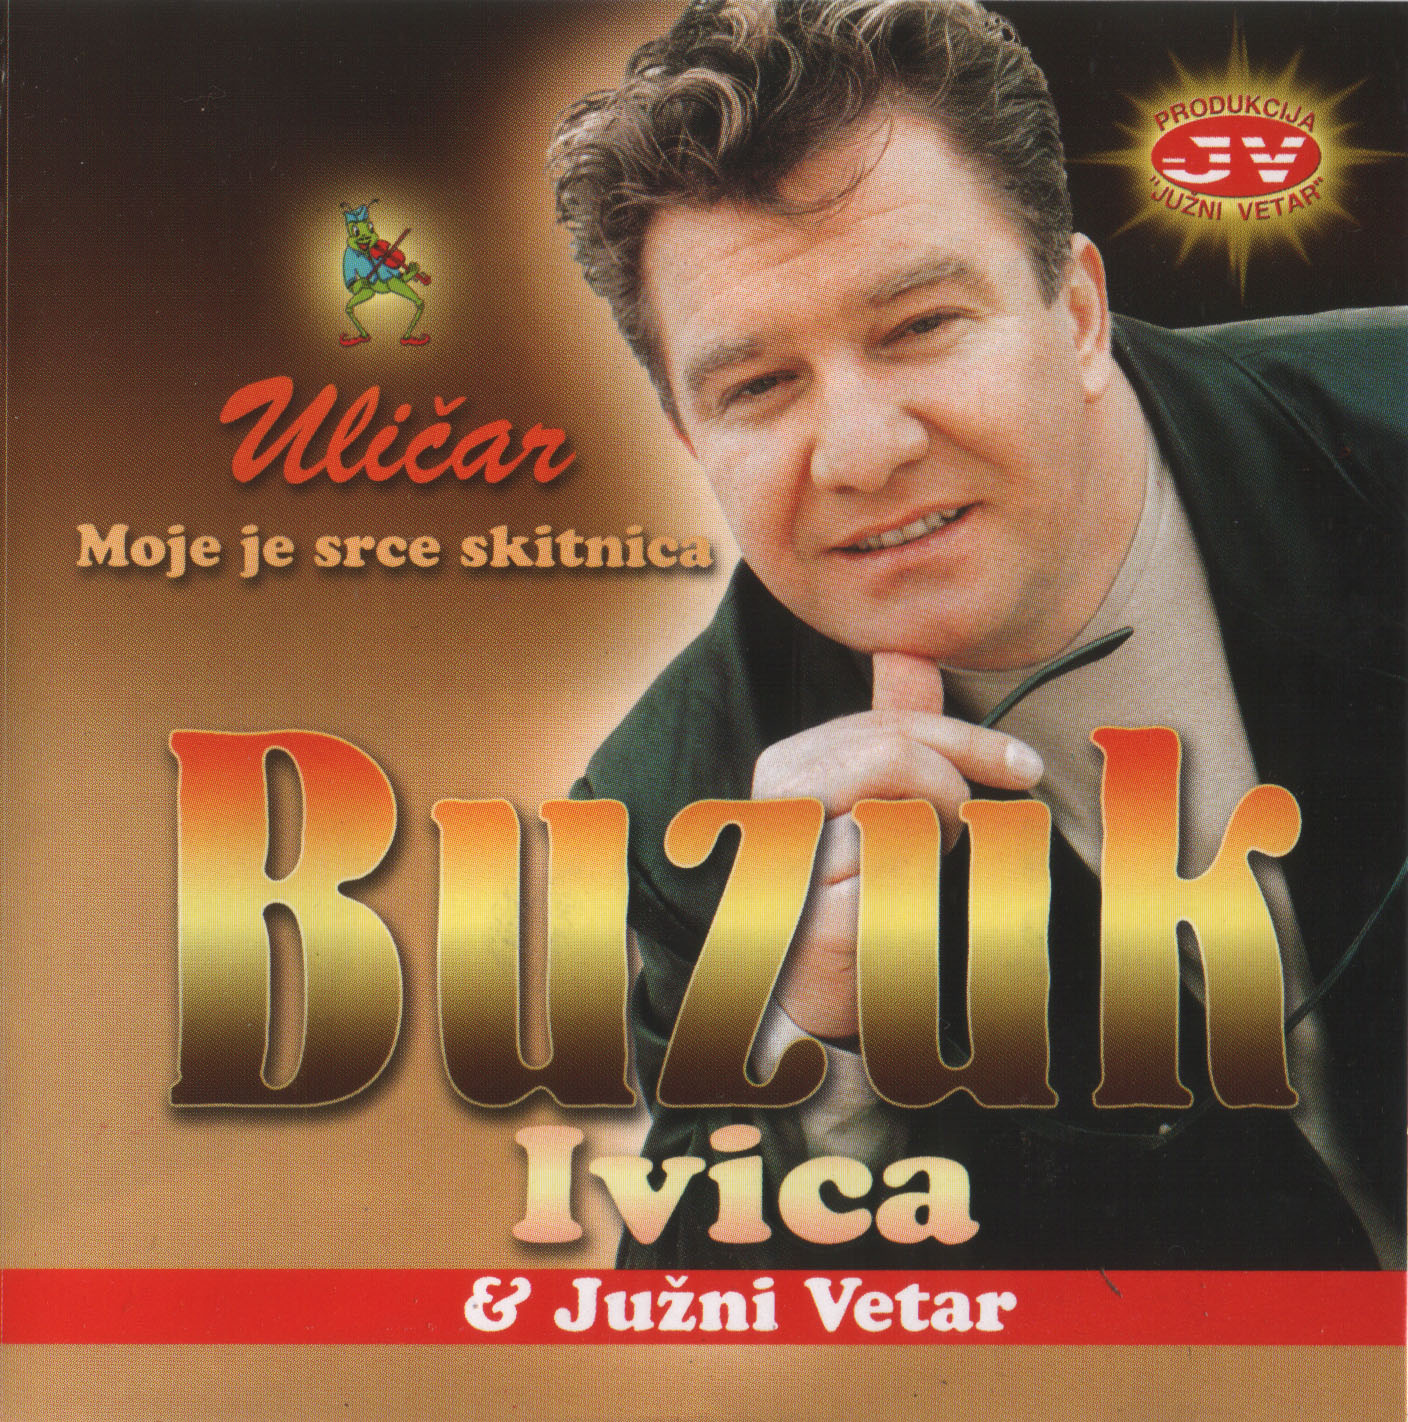 Ivica Buzuk 2002 Prednja 1